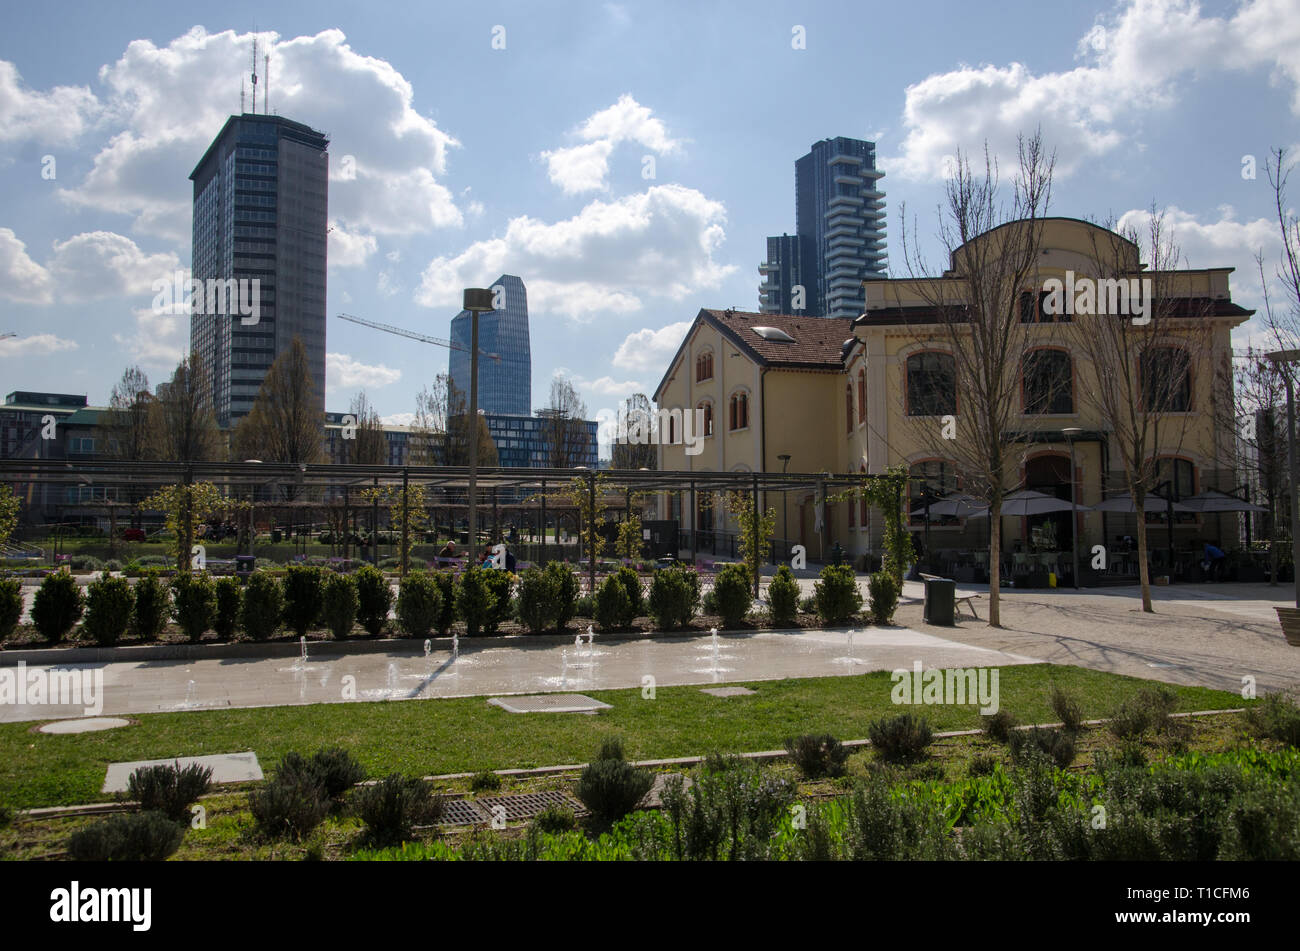 Biblioteca degli Alberi garden at Porta Nuova District in Milano, March 20th, 2019 Stock Photo